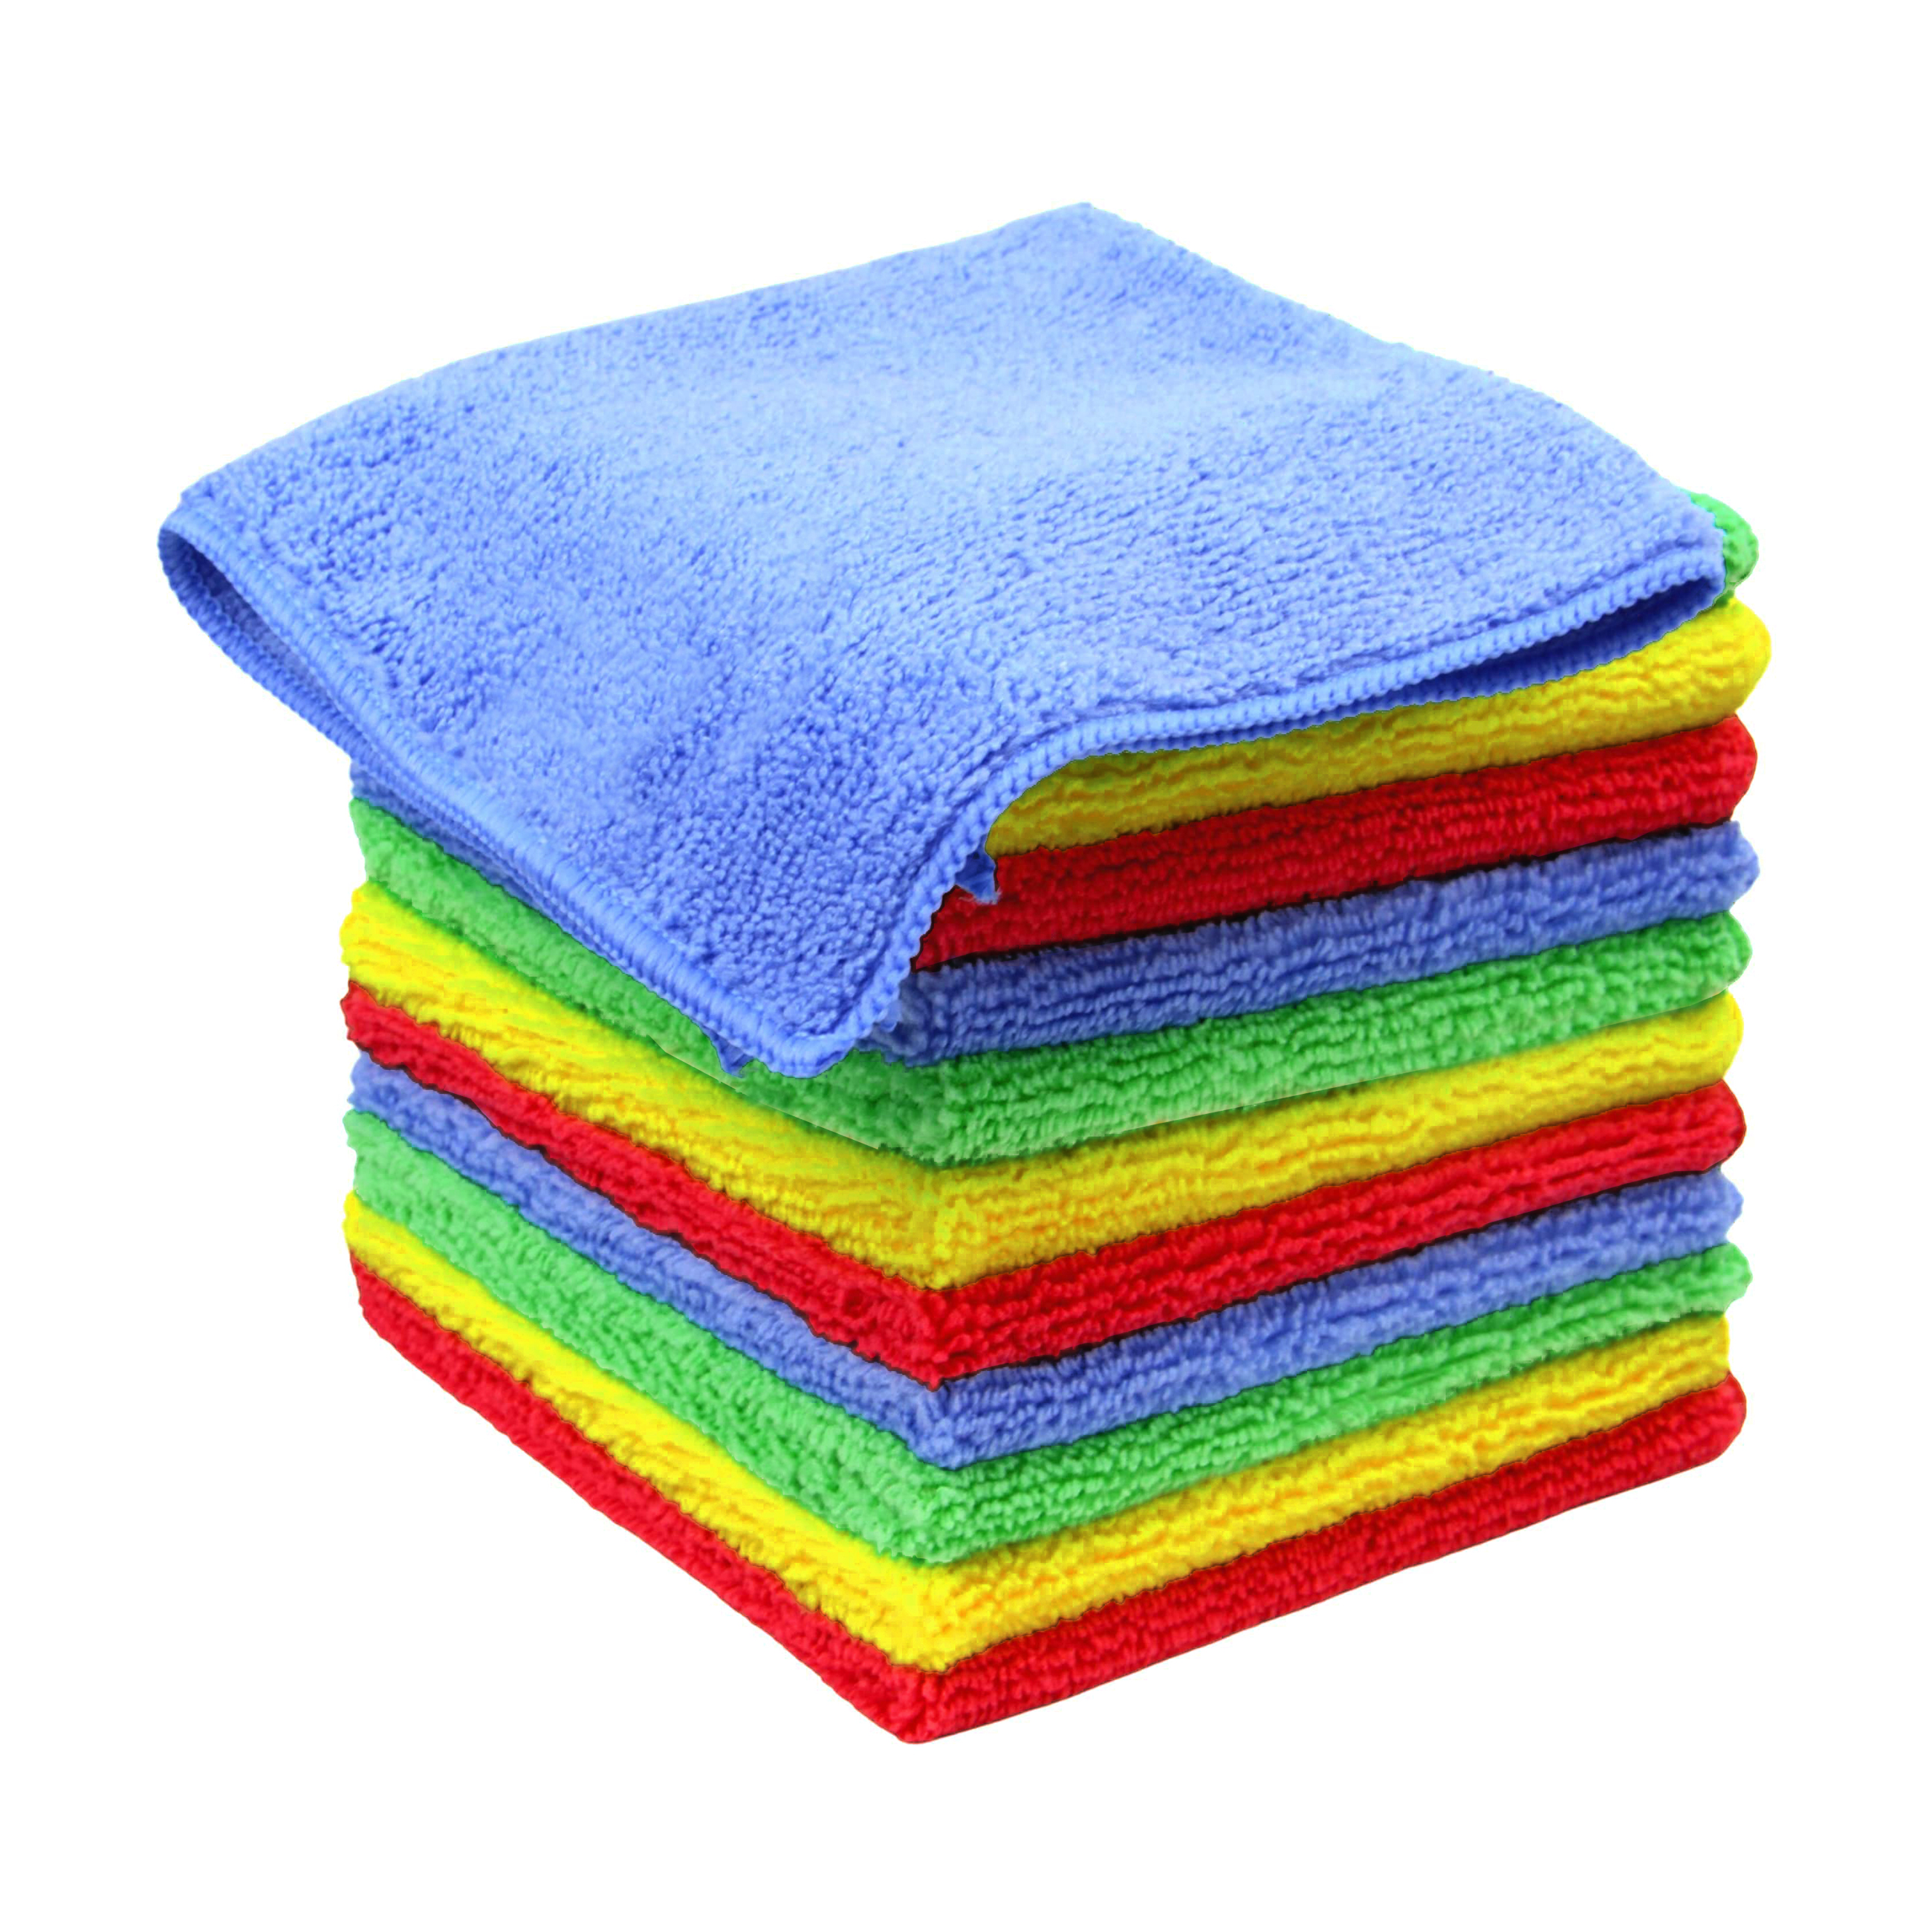 microfiber towel 5